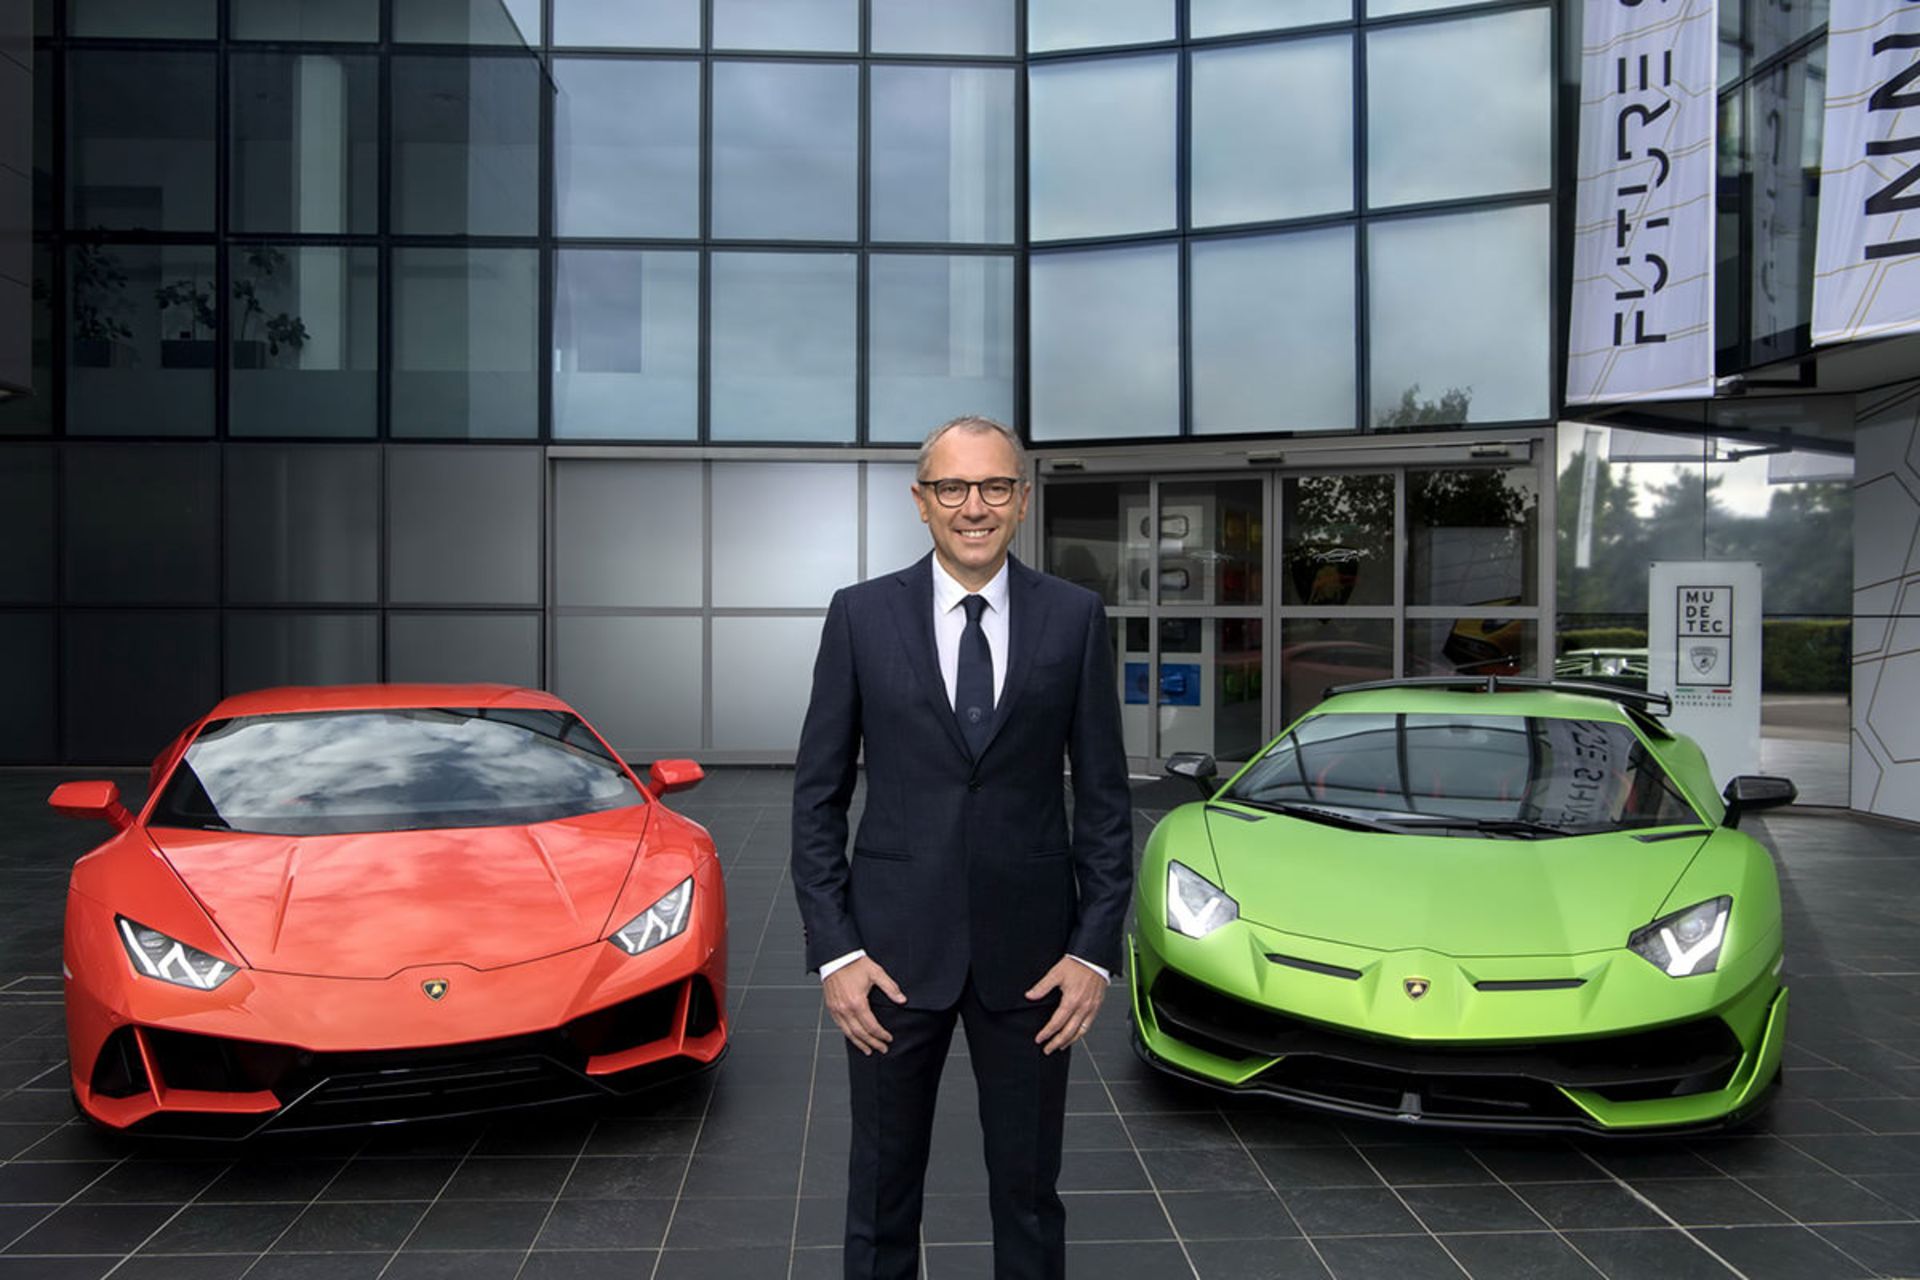 مرجع متخصصين ايران استفانو دومنيكالي مدير عامل لامبورگيني / Stefano Domenicali Lamborghini  در كنار سوپراسپرت اونتادور قرمز و سبز رنگ